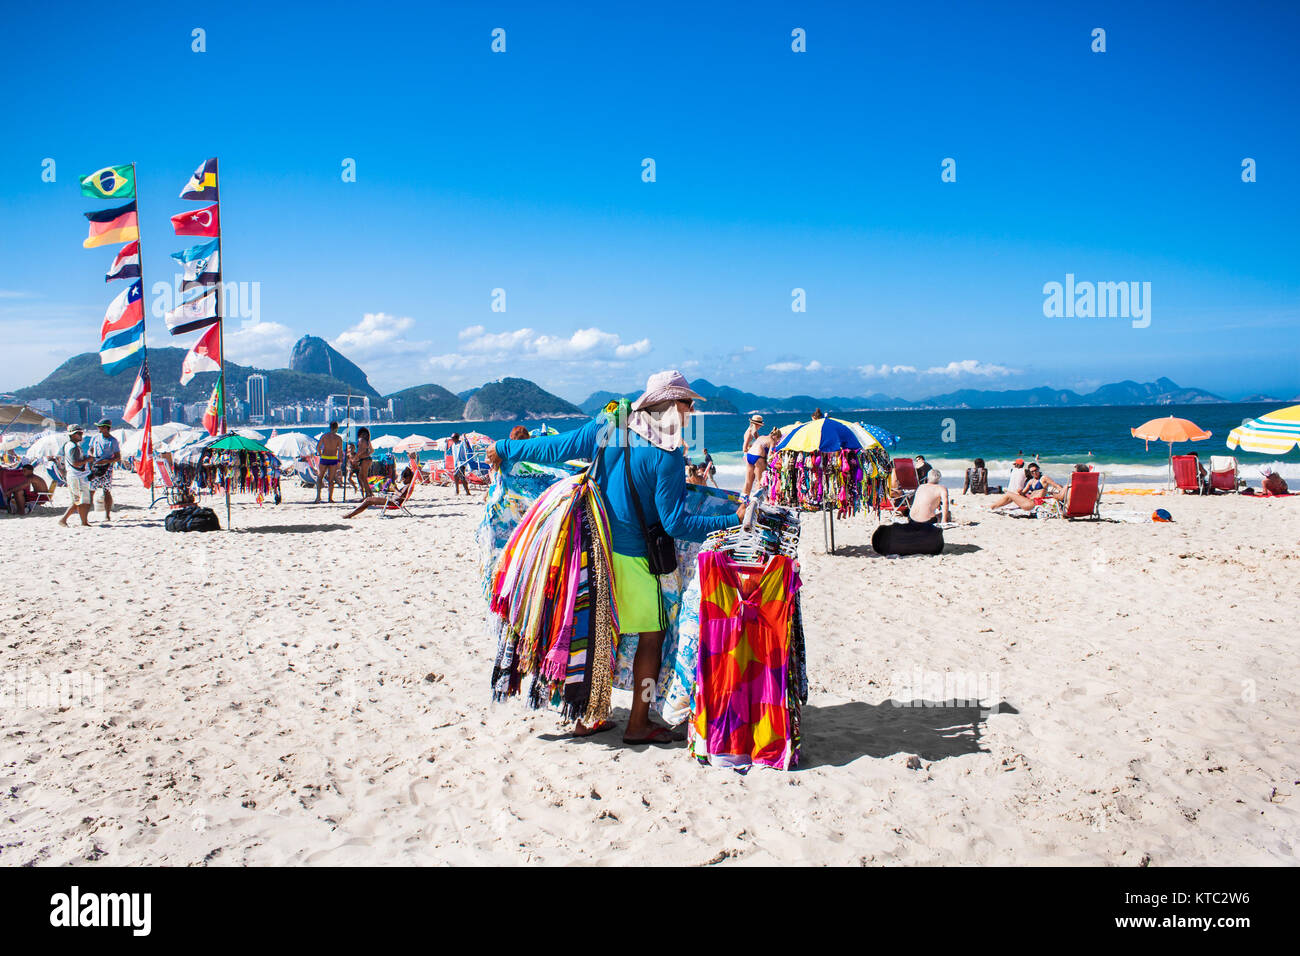 RIO DE JANEIRO, BRAZIL - APRIL 24, 2015: Brazilian street vendor sells table cloths on April 24, 2015 at Copacabana Beach, Rio de Janeiro. Brazil. Stock Photo